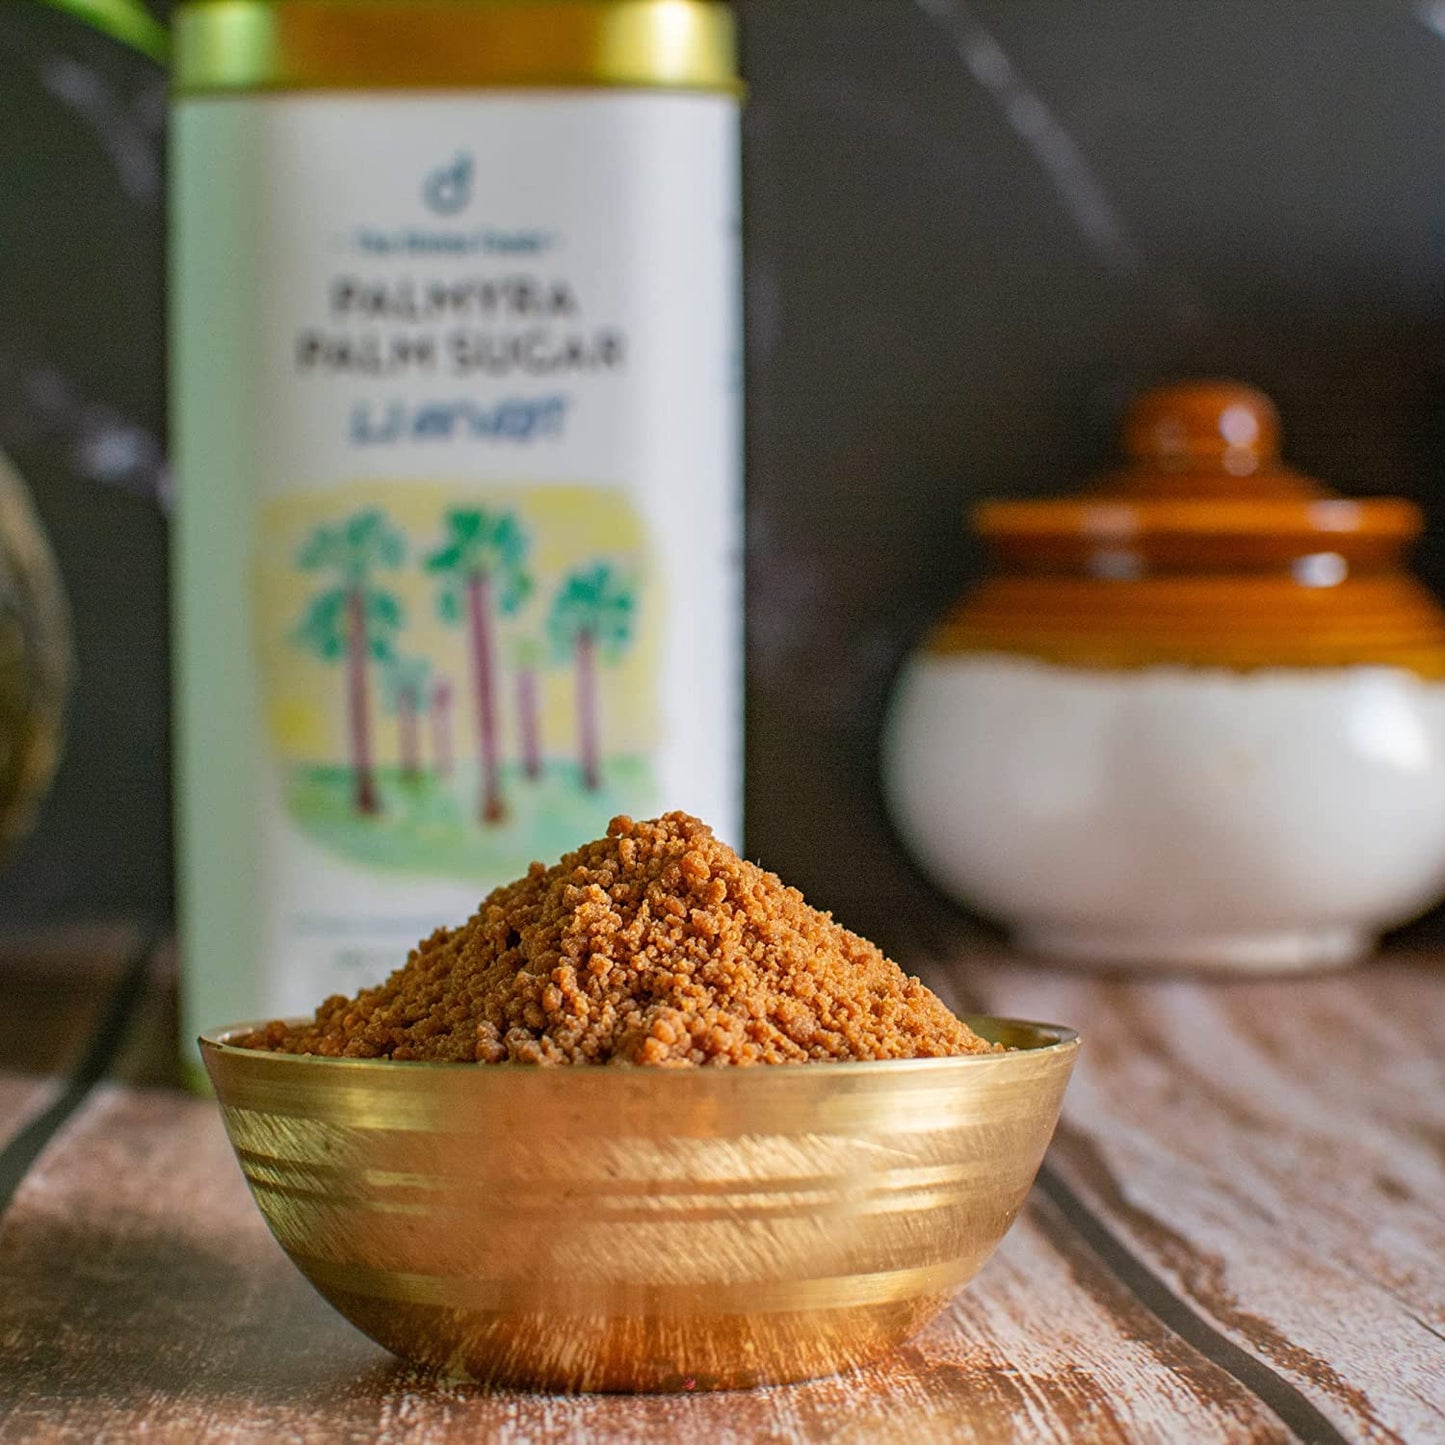 Natural Palmyra Palm Sugar | Natural Sweetener from Tuticorin, Sugar Alternative | Unrefined | Sugar for Coffee, Tea & Recipes | Vegan | Natural | Non GMO (250 gm)